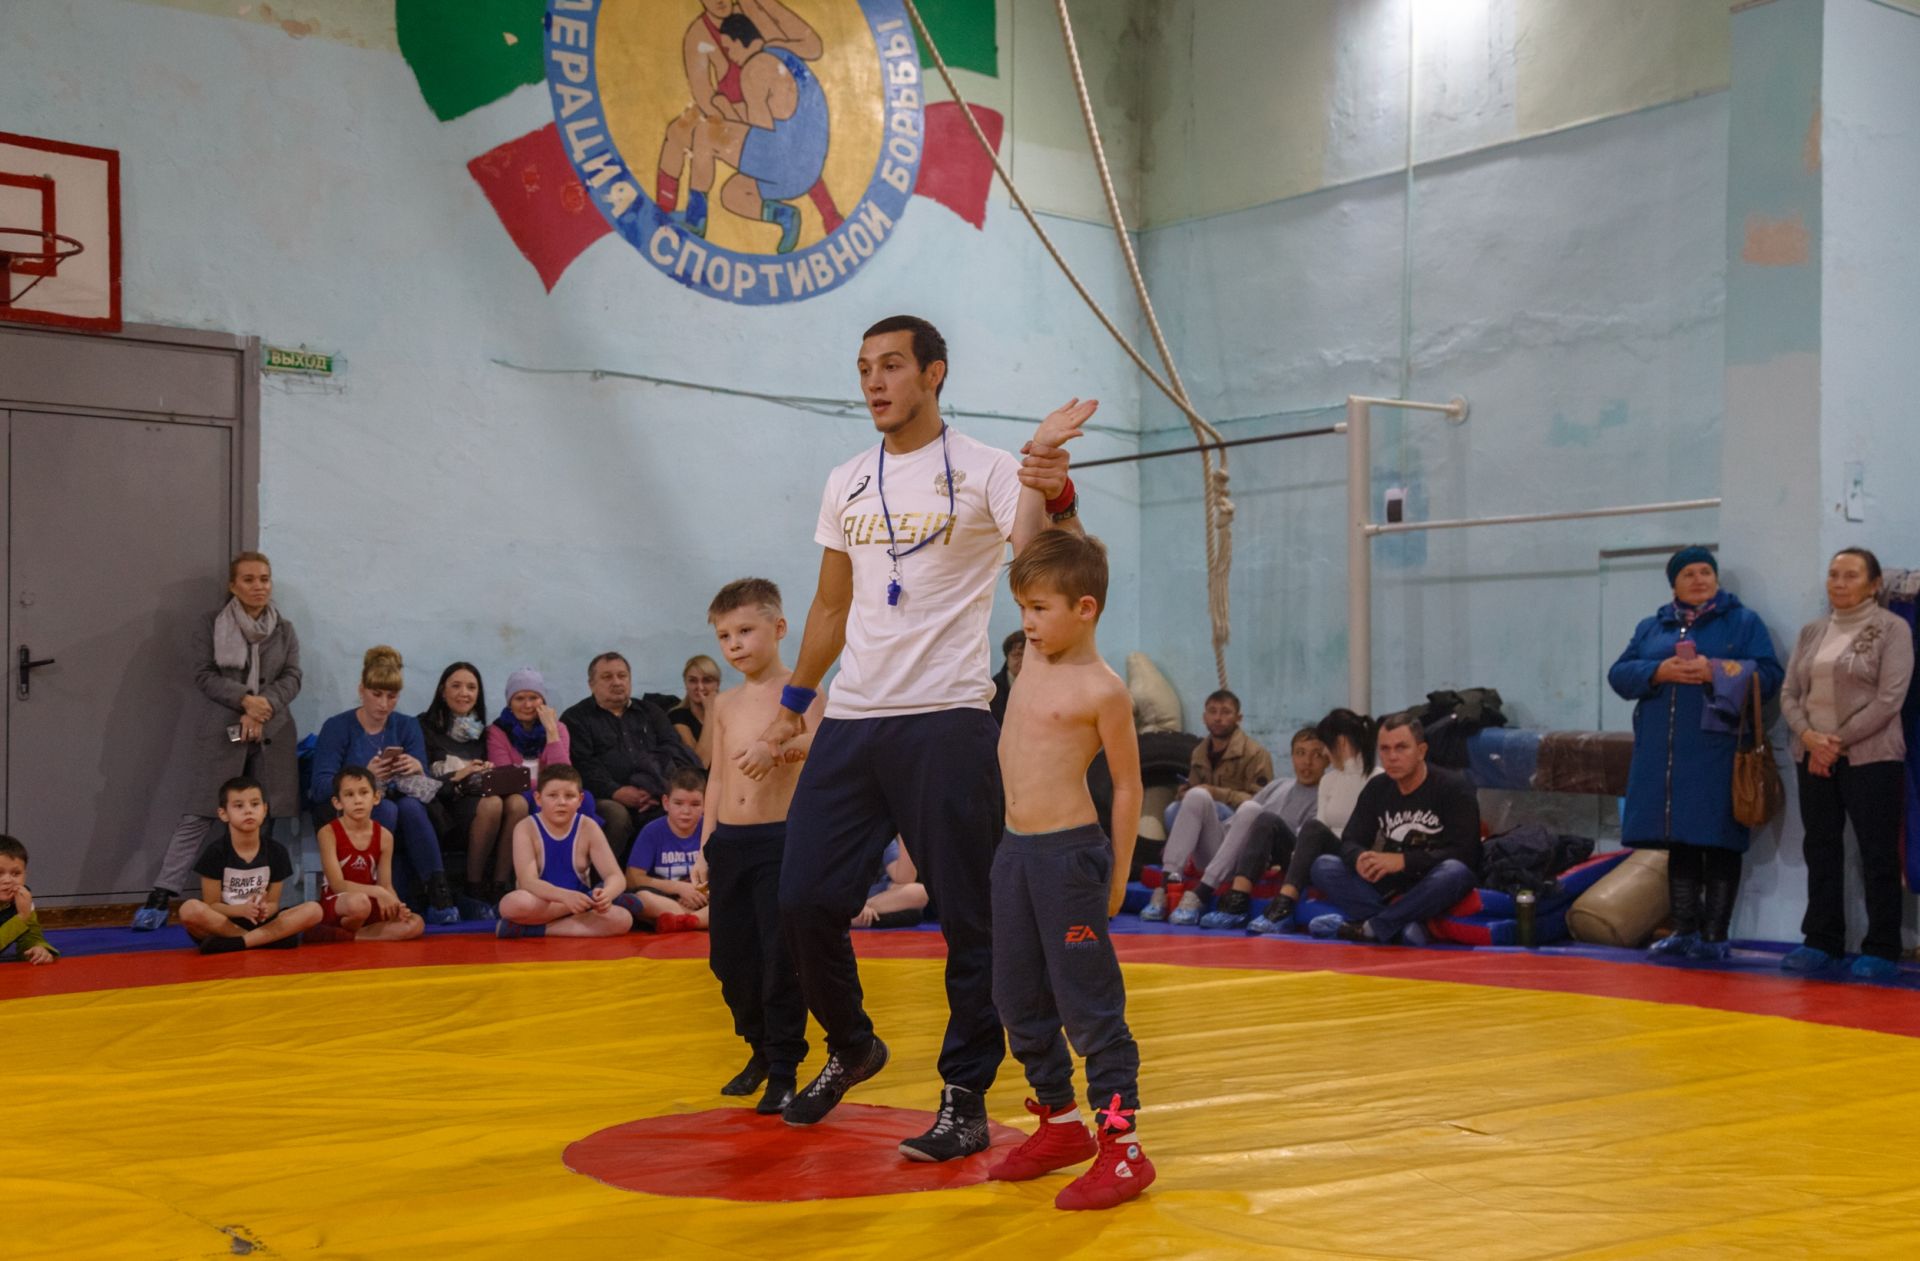 Около 400 юниоров со всей России участвуют в турнире по греко-римской борьбе в Казани